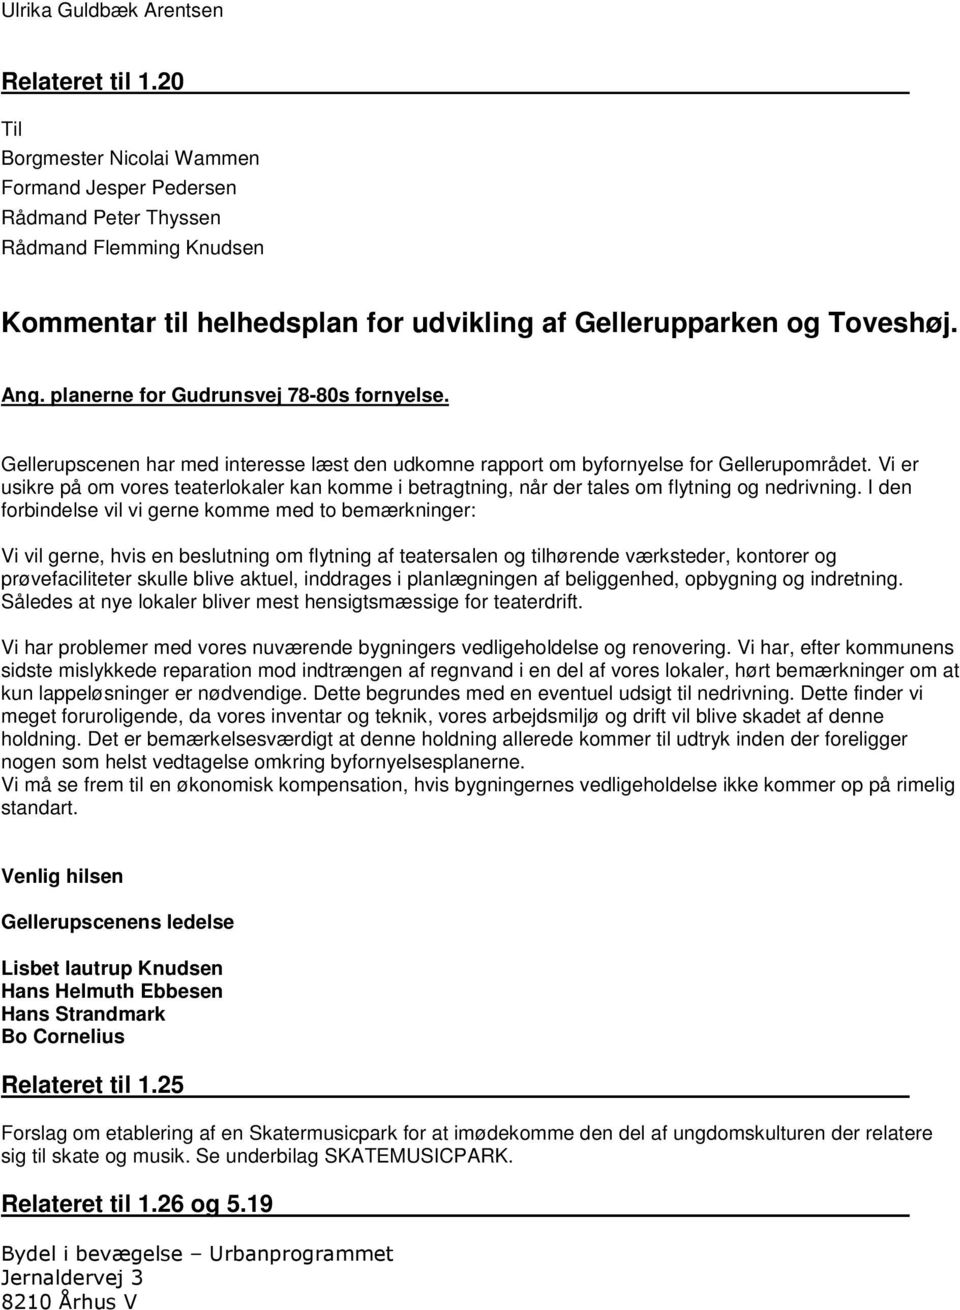 planerne for Gudrunsvej 78-80s fornyelse. Gellerupscenen har med interesse læst den udkomne rapport om byfornyelse for Gellerupområdet.